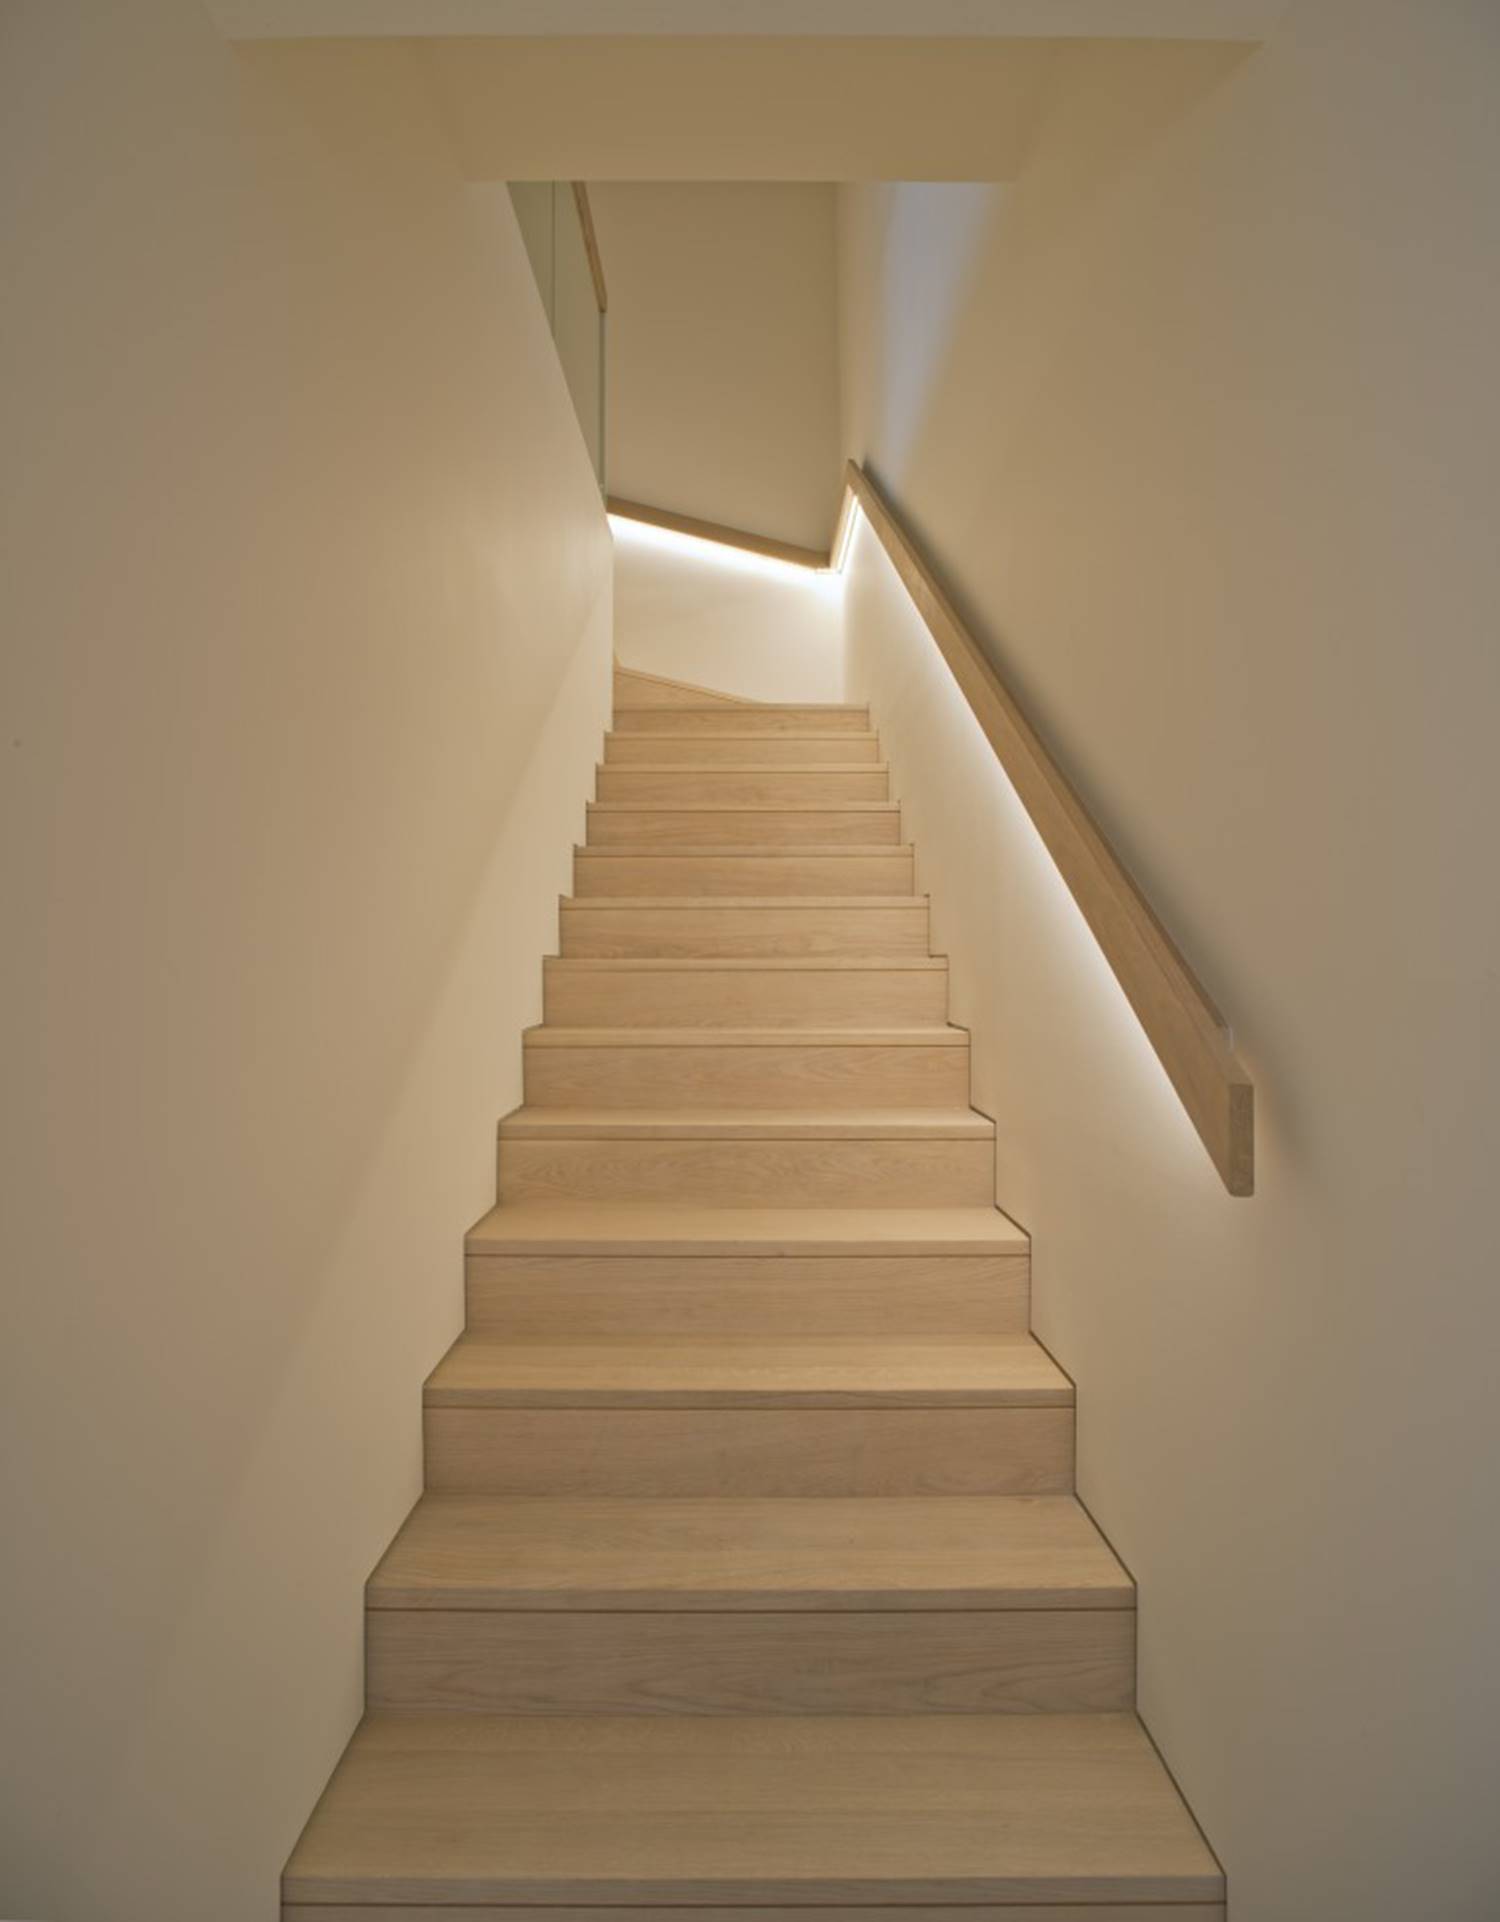 Proyecto de iluminación de una escalera mediante luz indirecta
